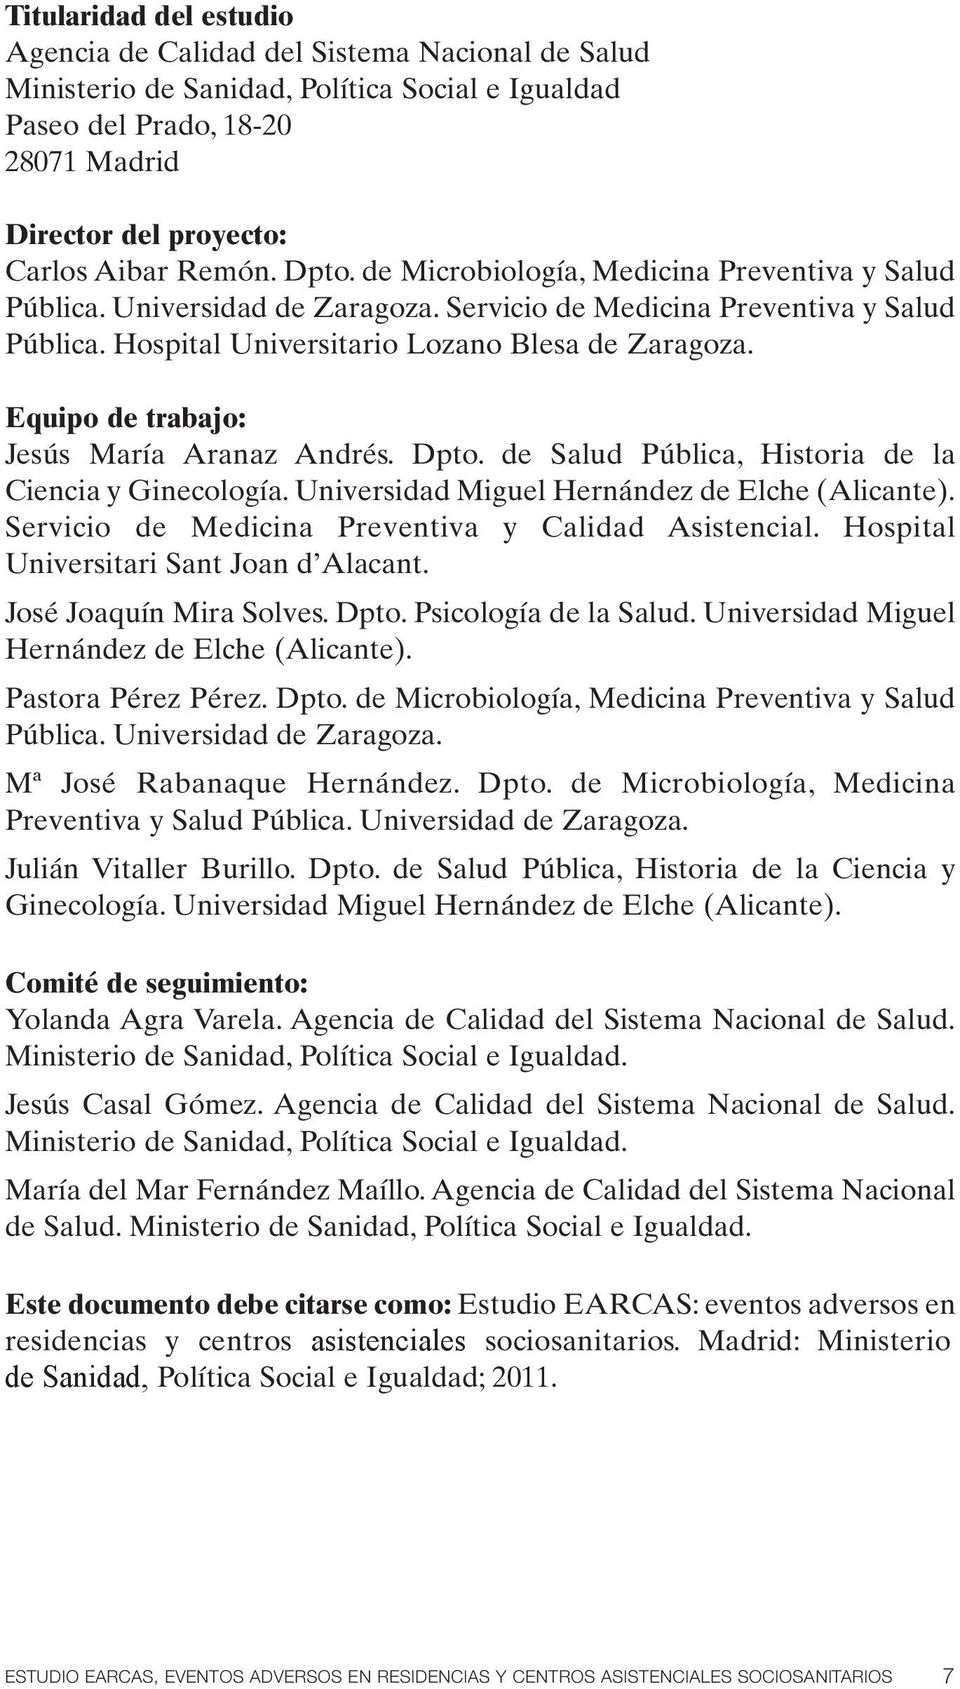 Equipo de trabajo: Jesús María Aranaz Andrés. Dpto. de Salud Pública, Historia de la Ciencia y Ginecología. Universidad Miguel Hernández de Elche (Alicante).